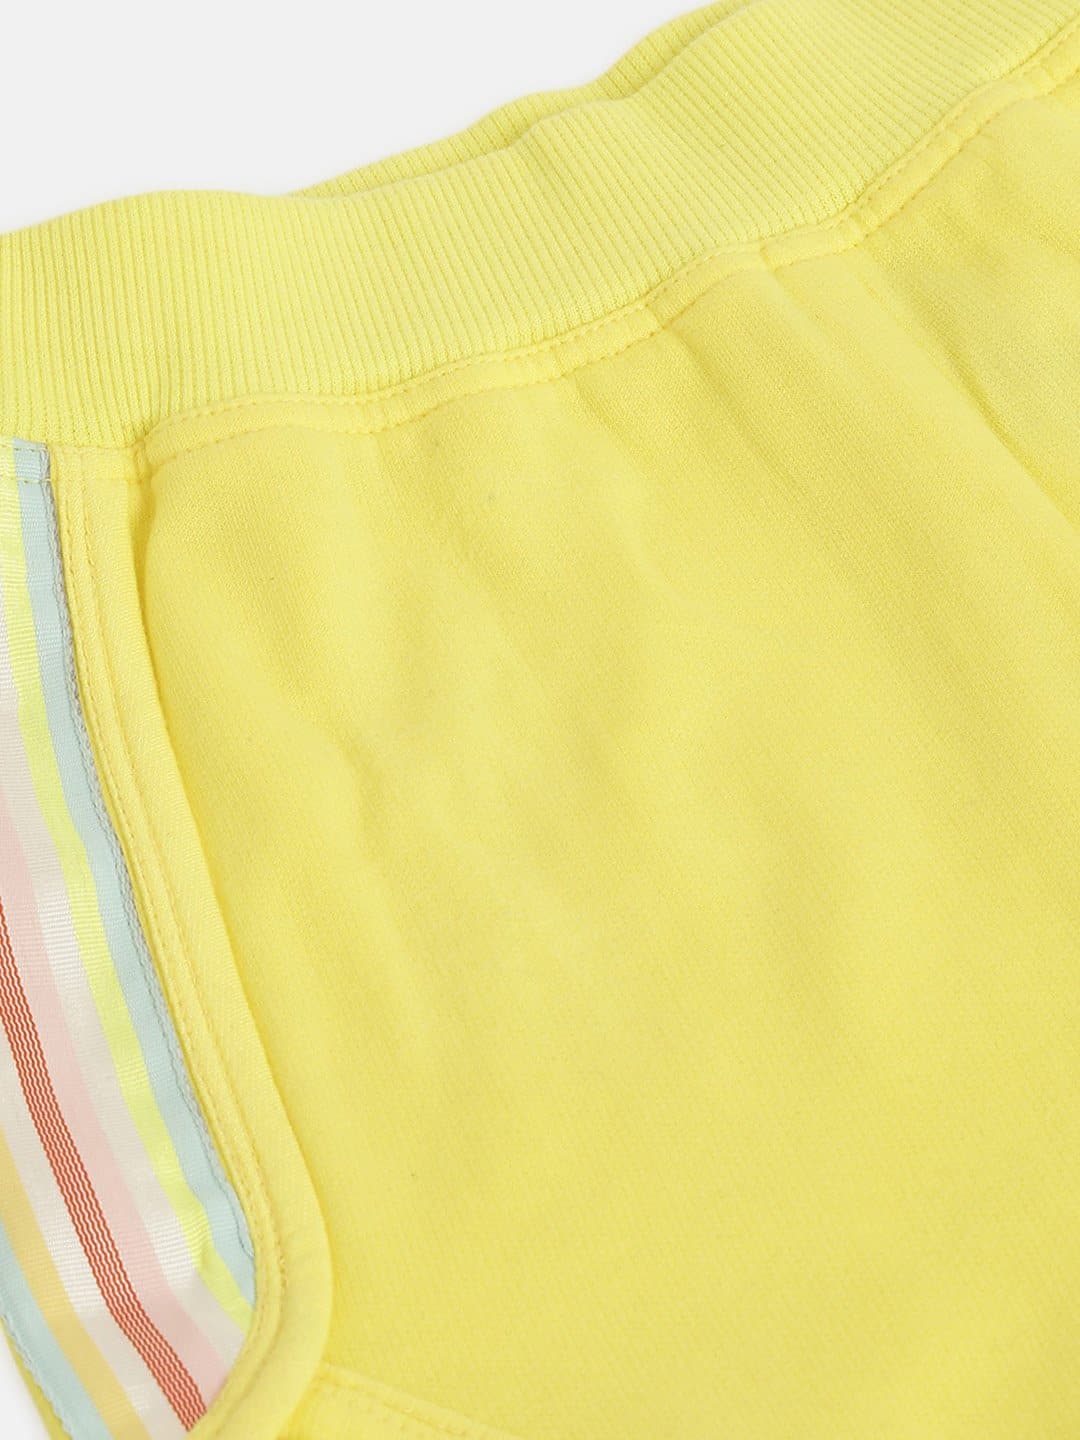 Girls Yellow Fleece Rainbow Tape Detail Shorts - Lyush Kids